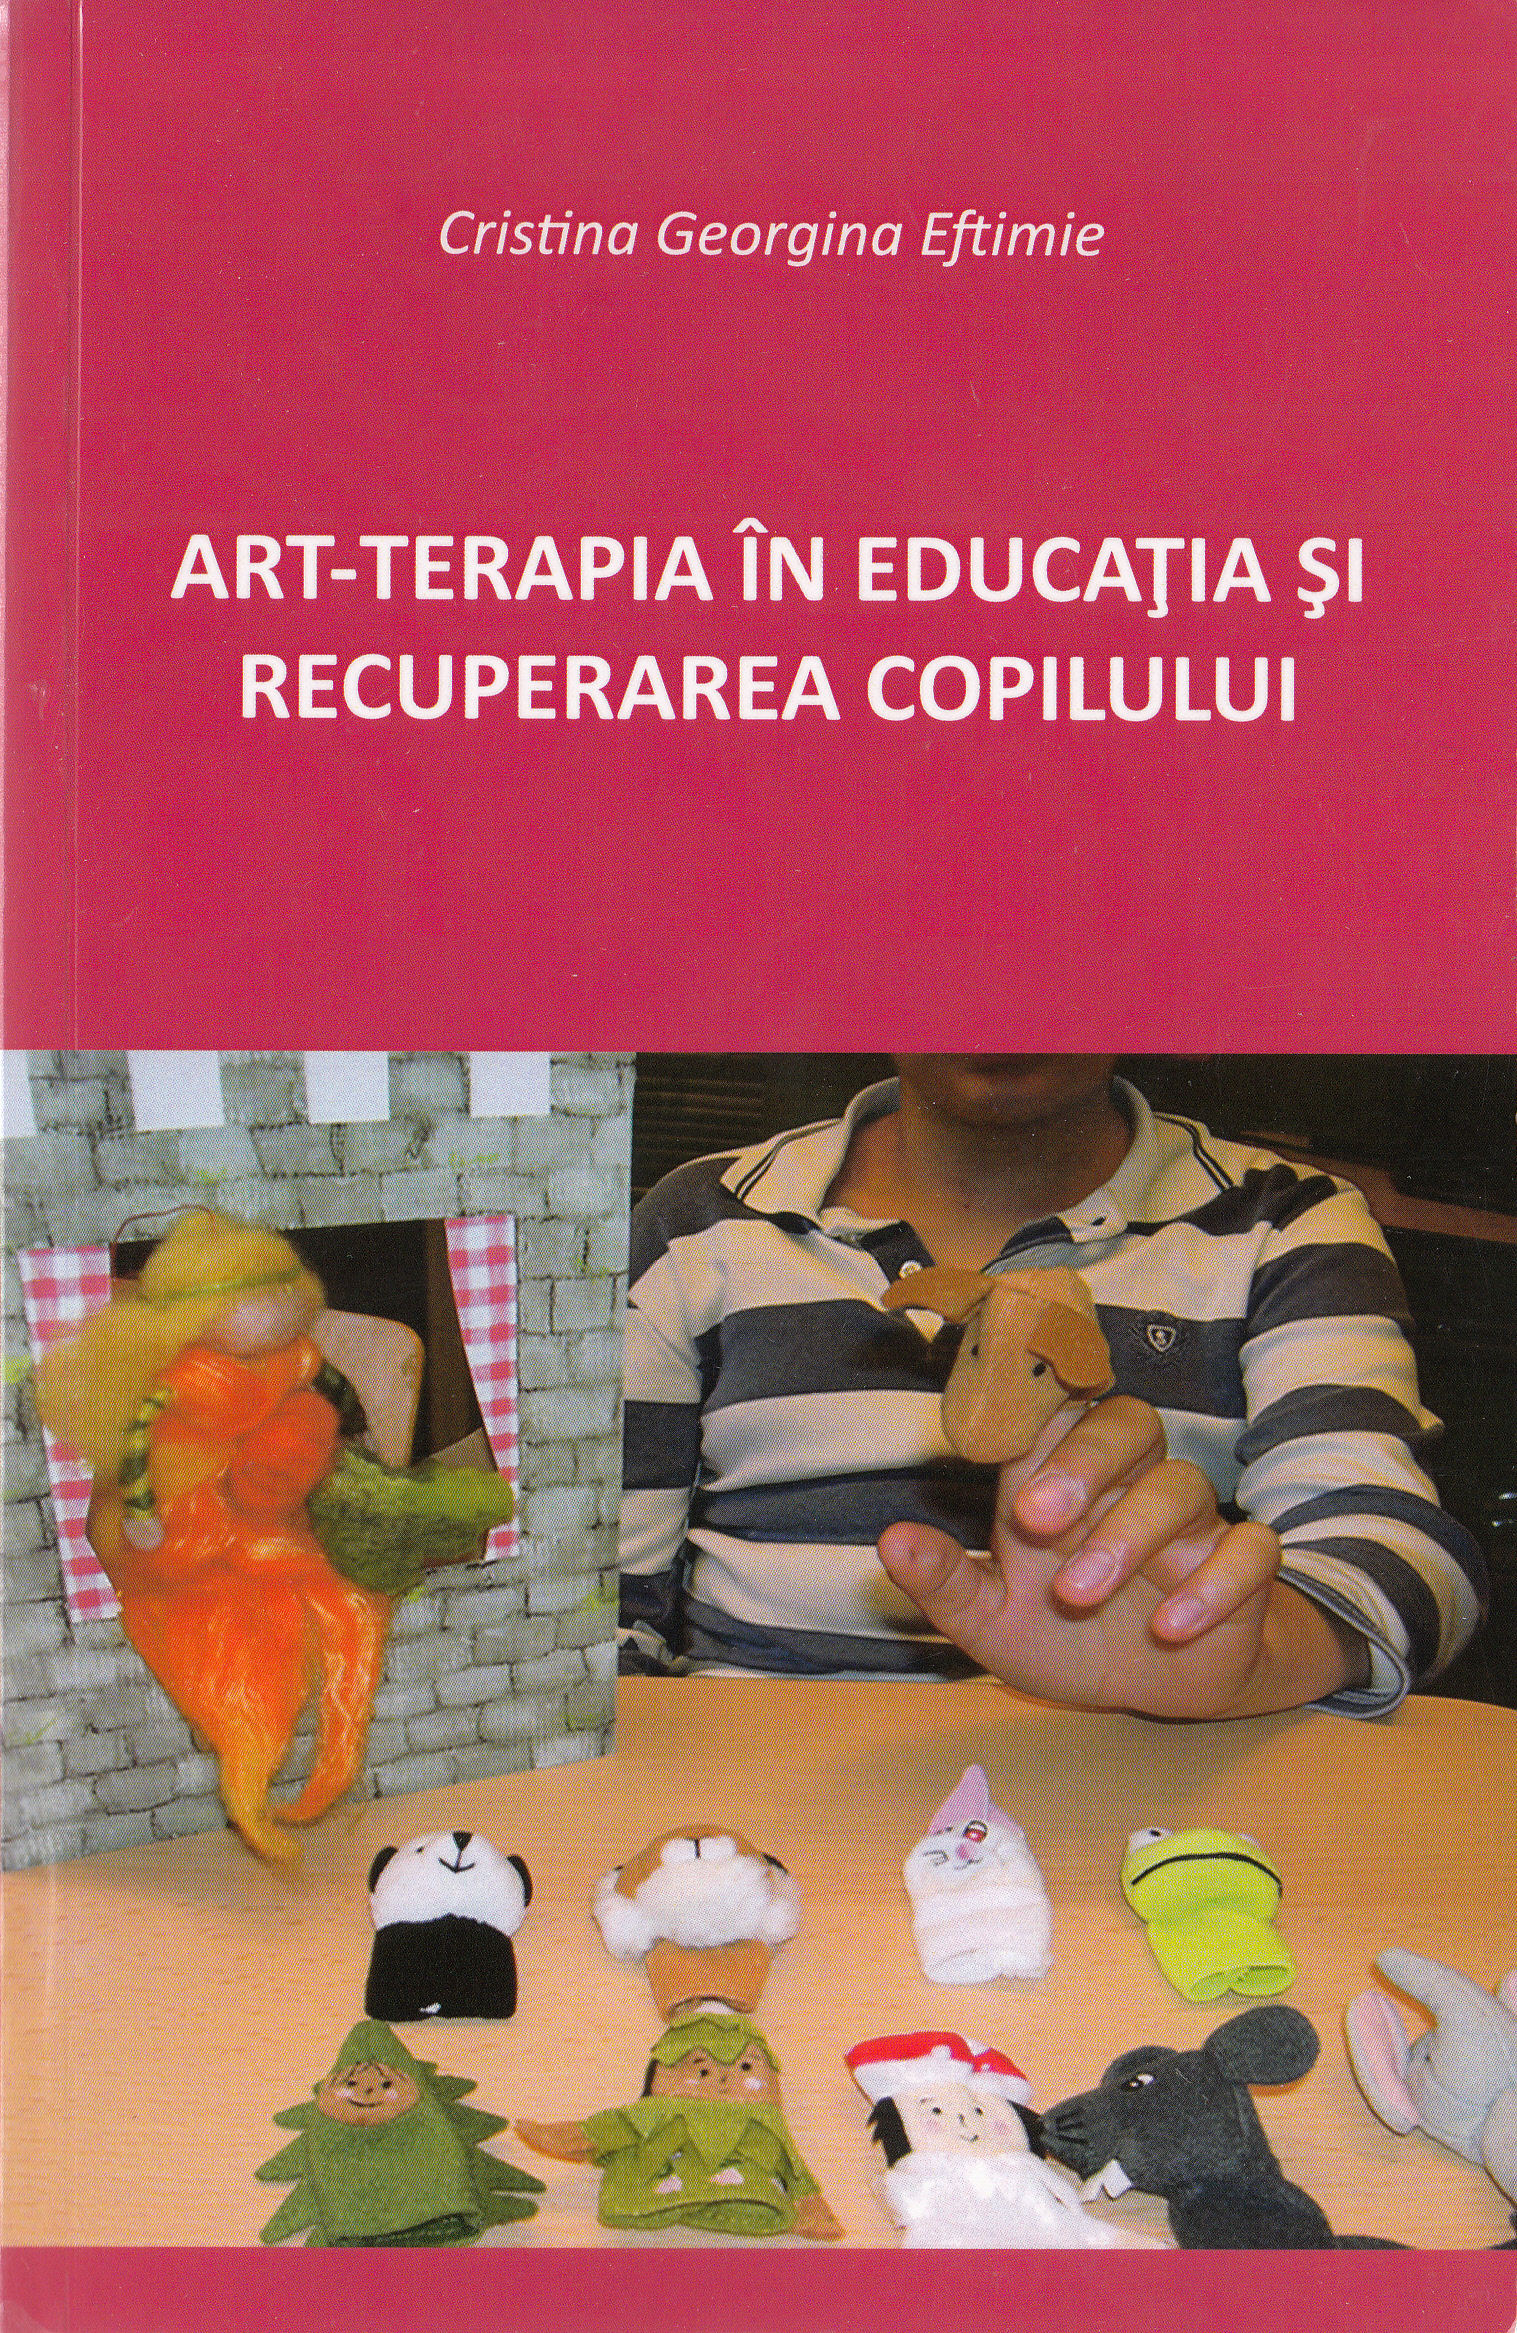 Art-terapia in educatia si recuperarea copilului - Cristina Georgina Eftimie